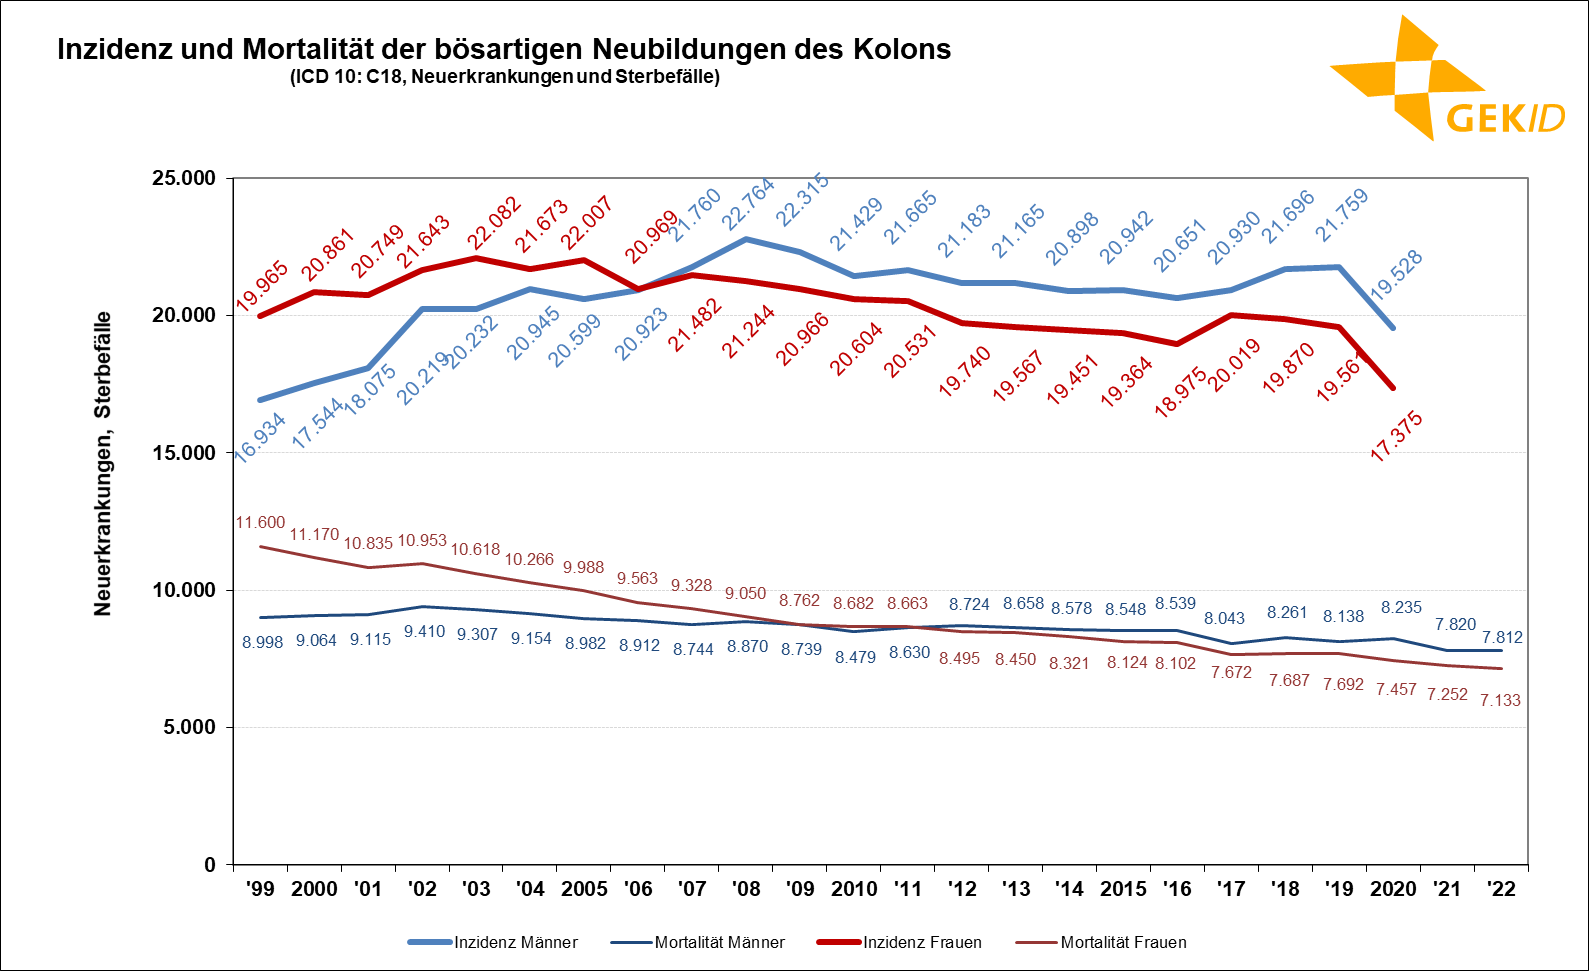 Geschätzte Inzidenz und Mortalität der bösartigen Neubildungen des Kolons (ICD 10: C18) in Deutschland – Fallzahlen